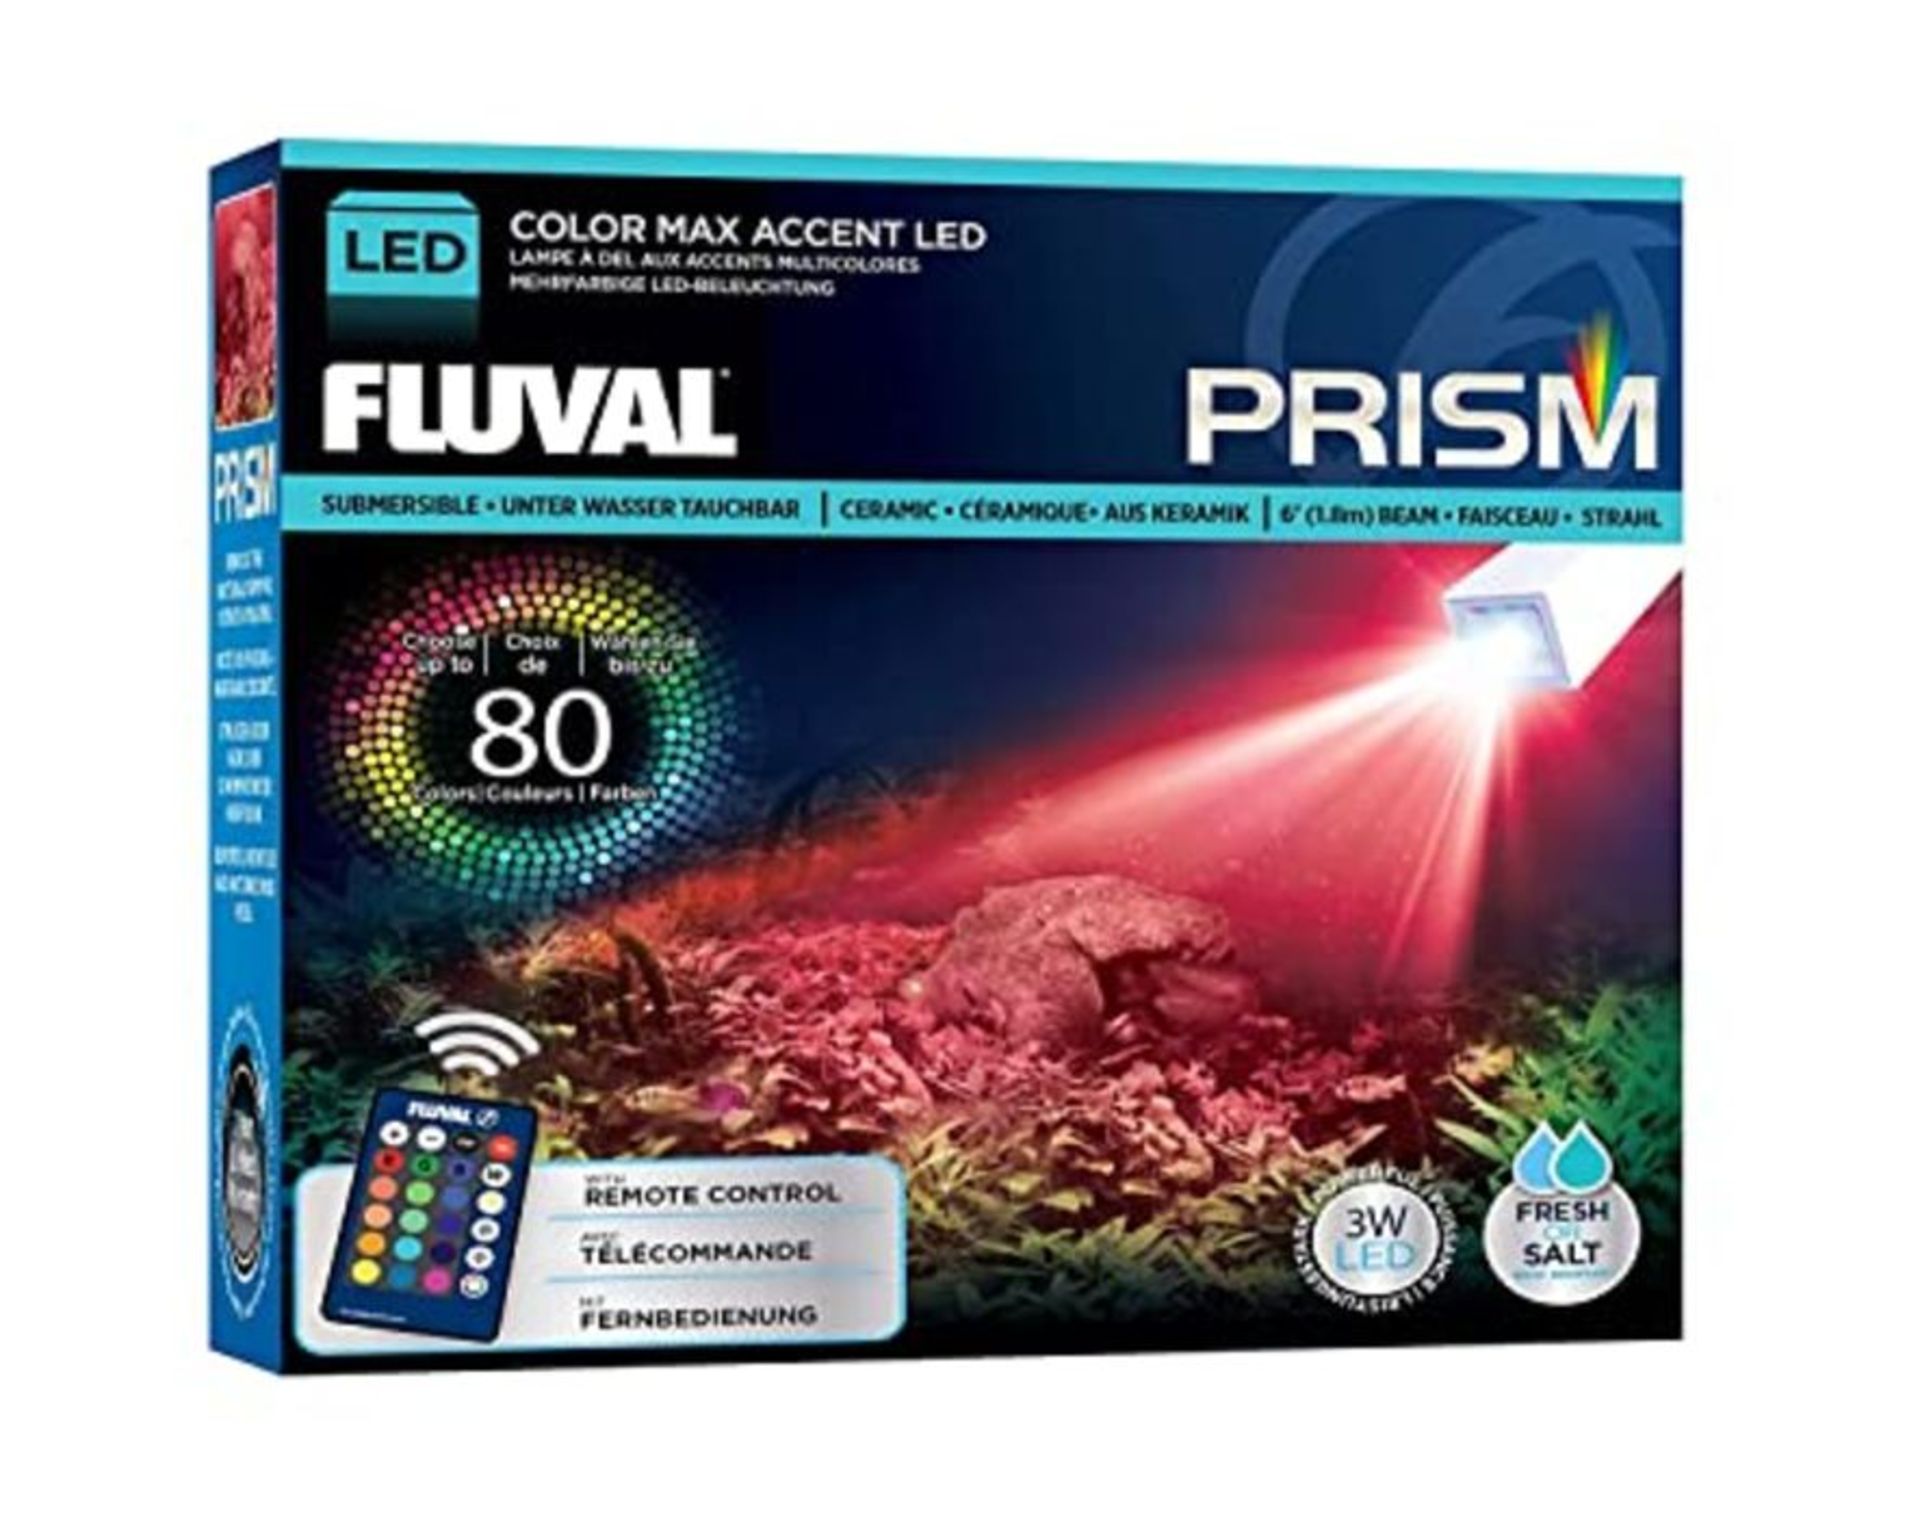 Fluval Prism Ceramic LED Spotlight 3 Watt